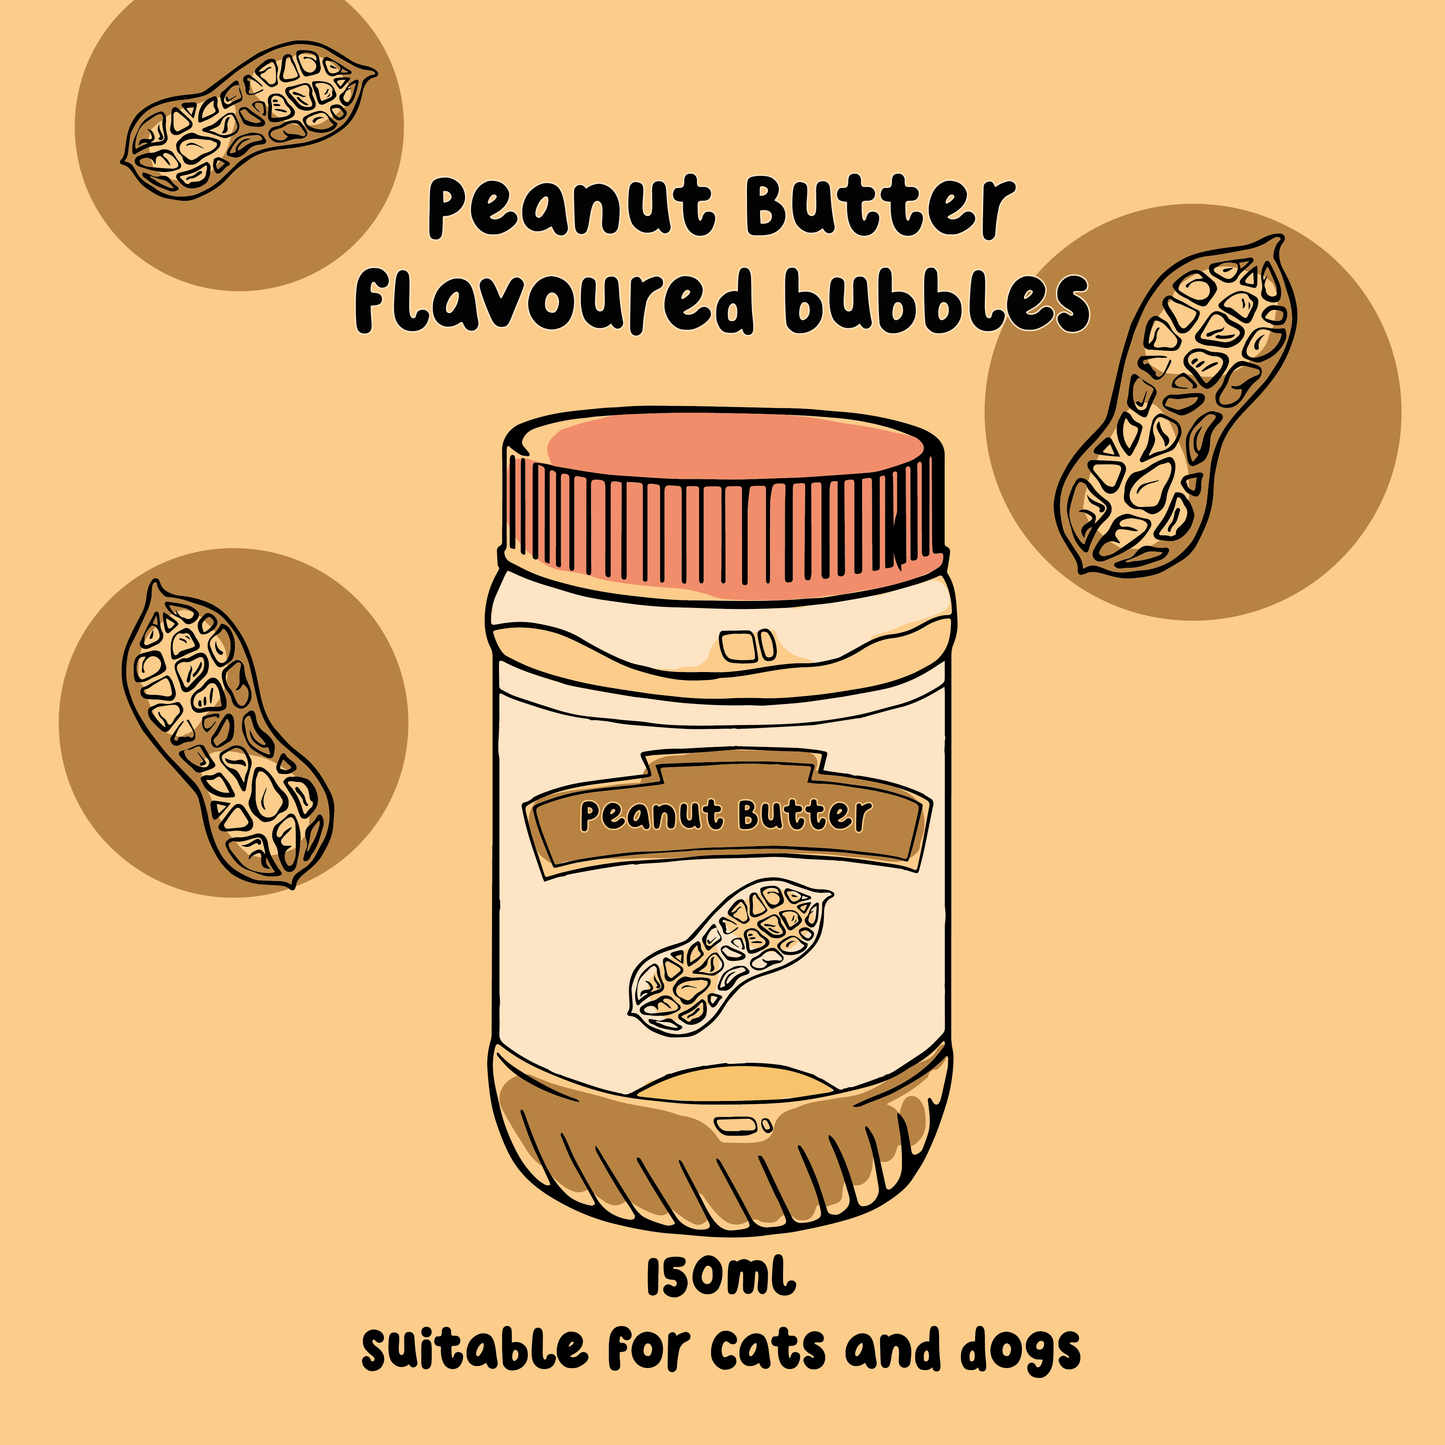 Peanut Butter bubbles